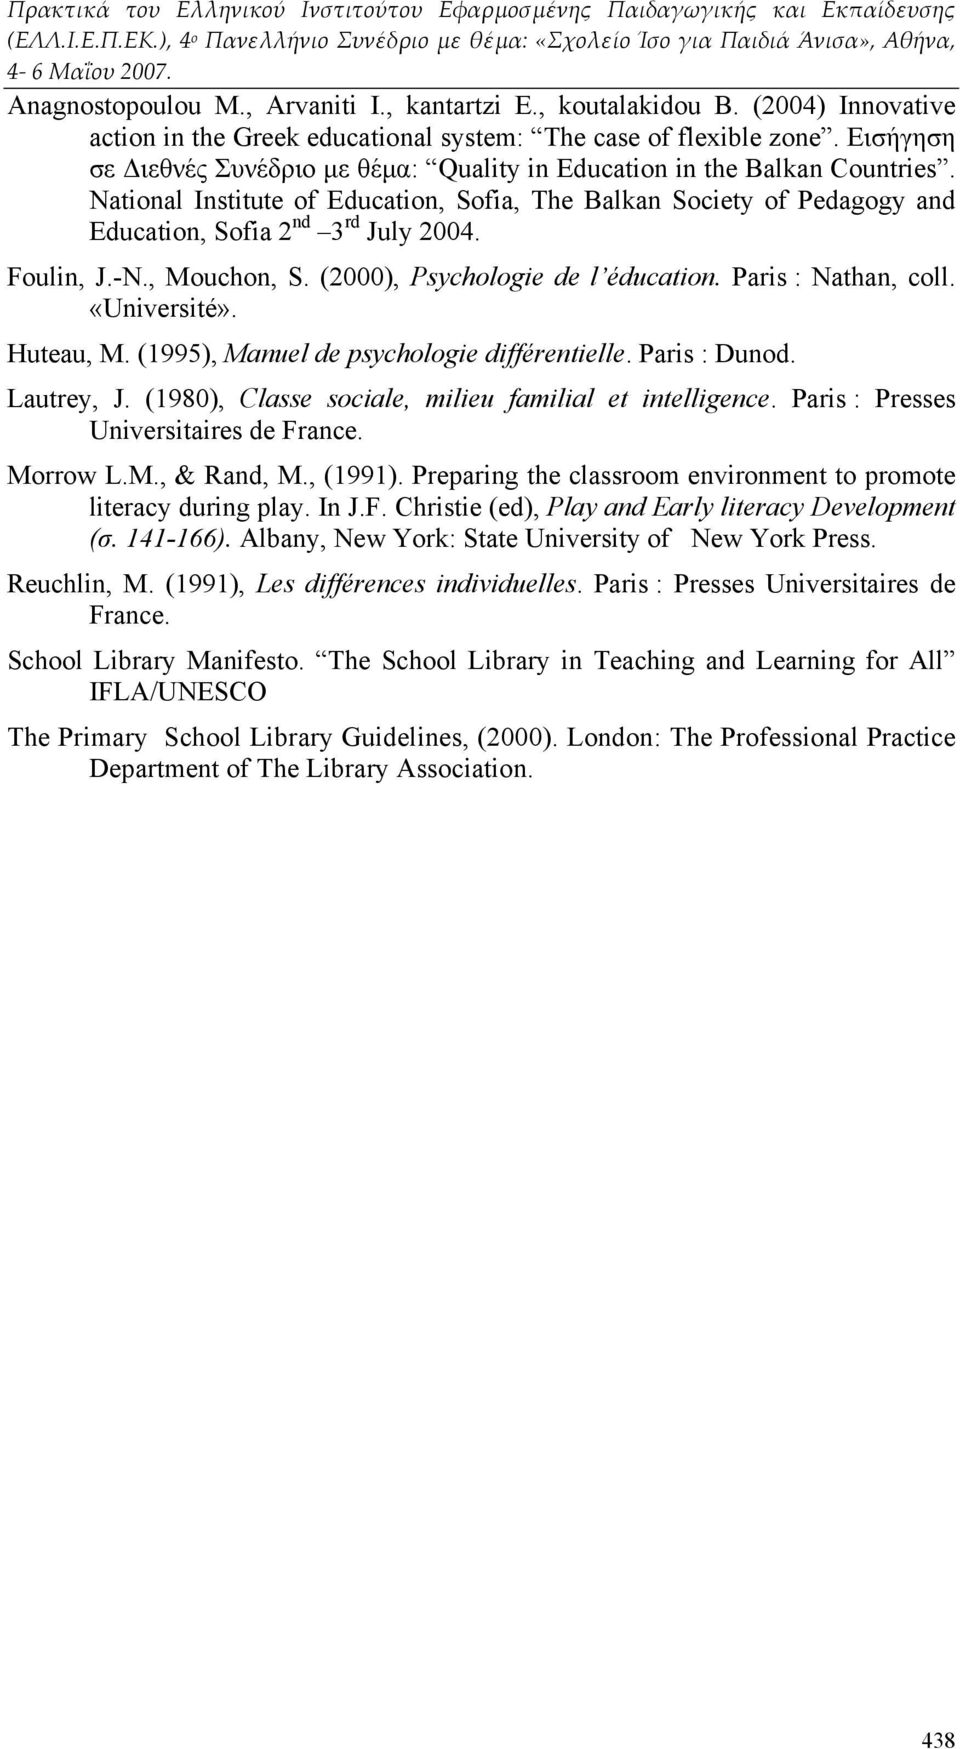 Foulin, J.-N., Mouchon, S. (2000), Psychologie de l éducation. Paris : Nathan, coll. «Université». Huteau, M. (1995), Manuel de psychologie différentielle. Paris : Dunod. Lautrey, J.